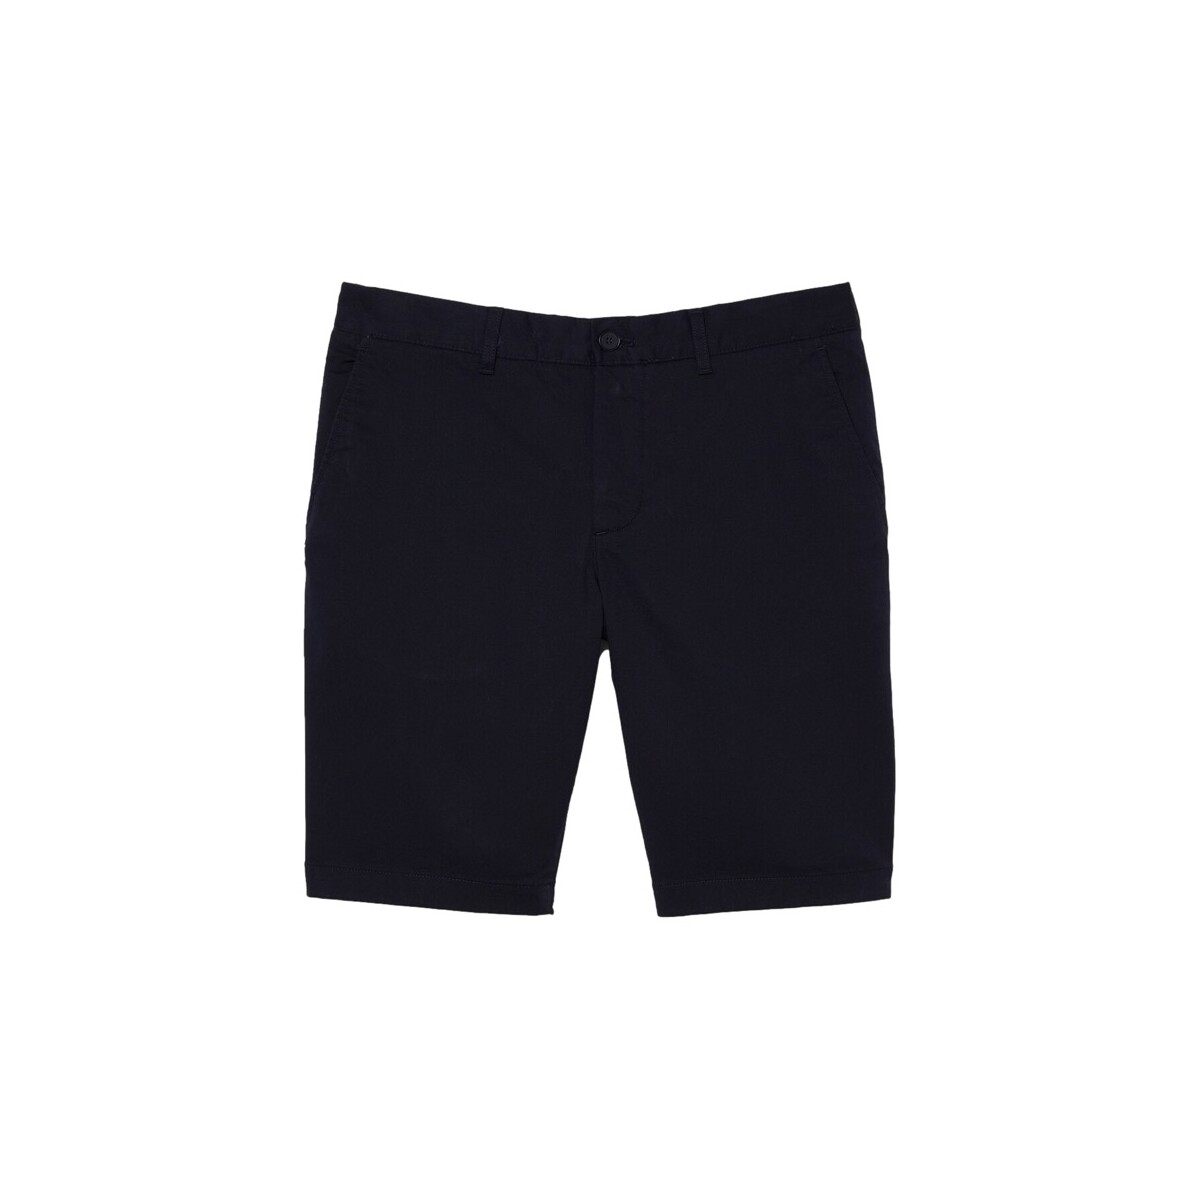 Vêtements Homme Shorts / Bermudas Lacoste Slim Fit Shorts - Blue Marine Bleu